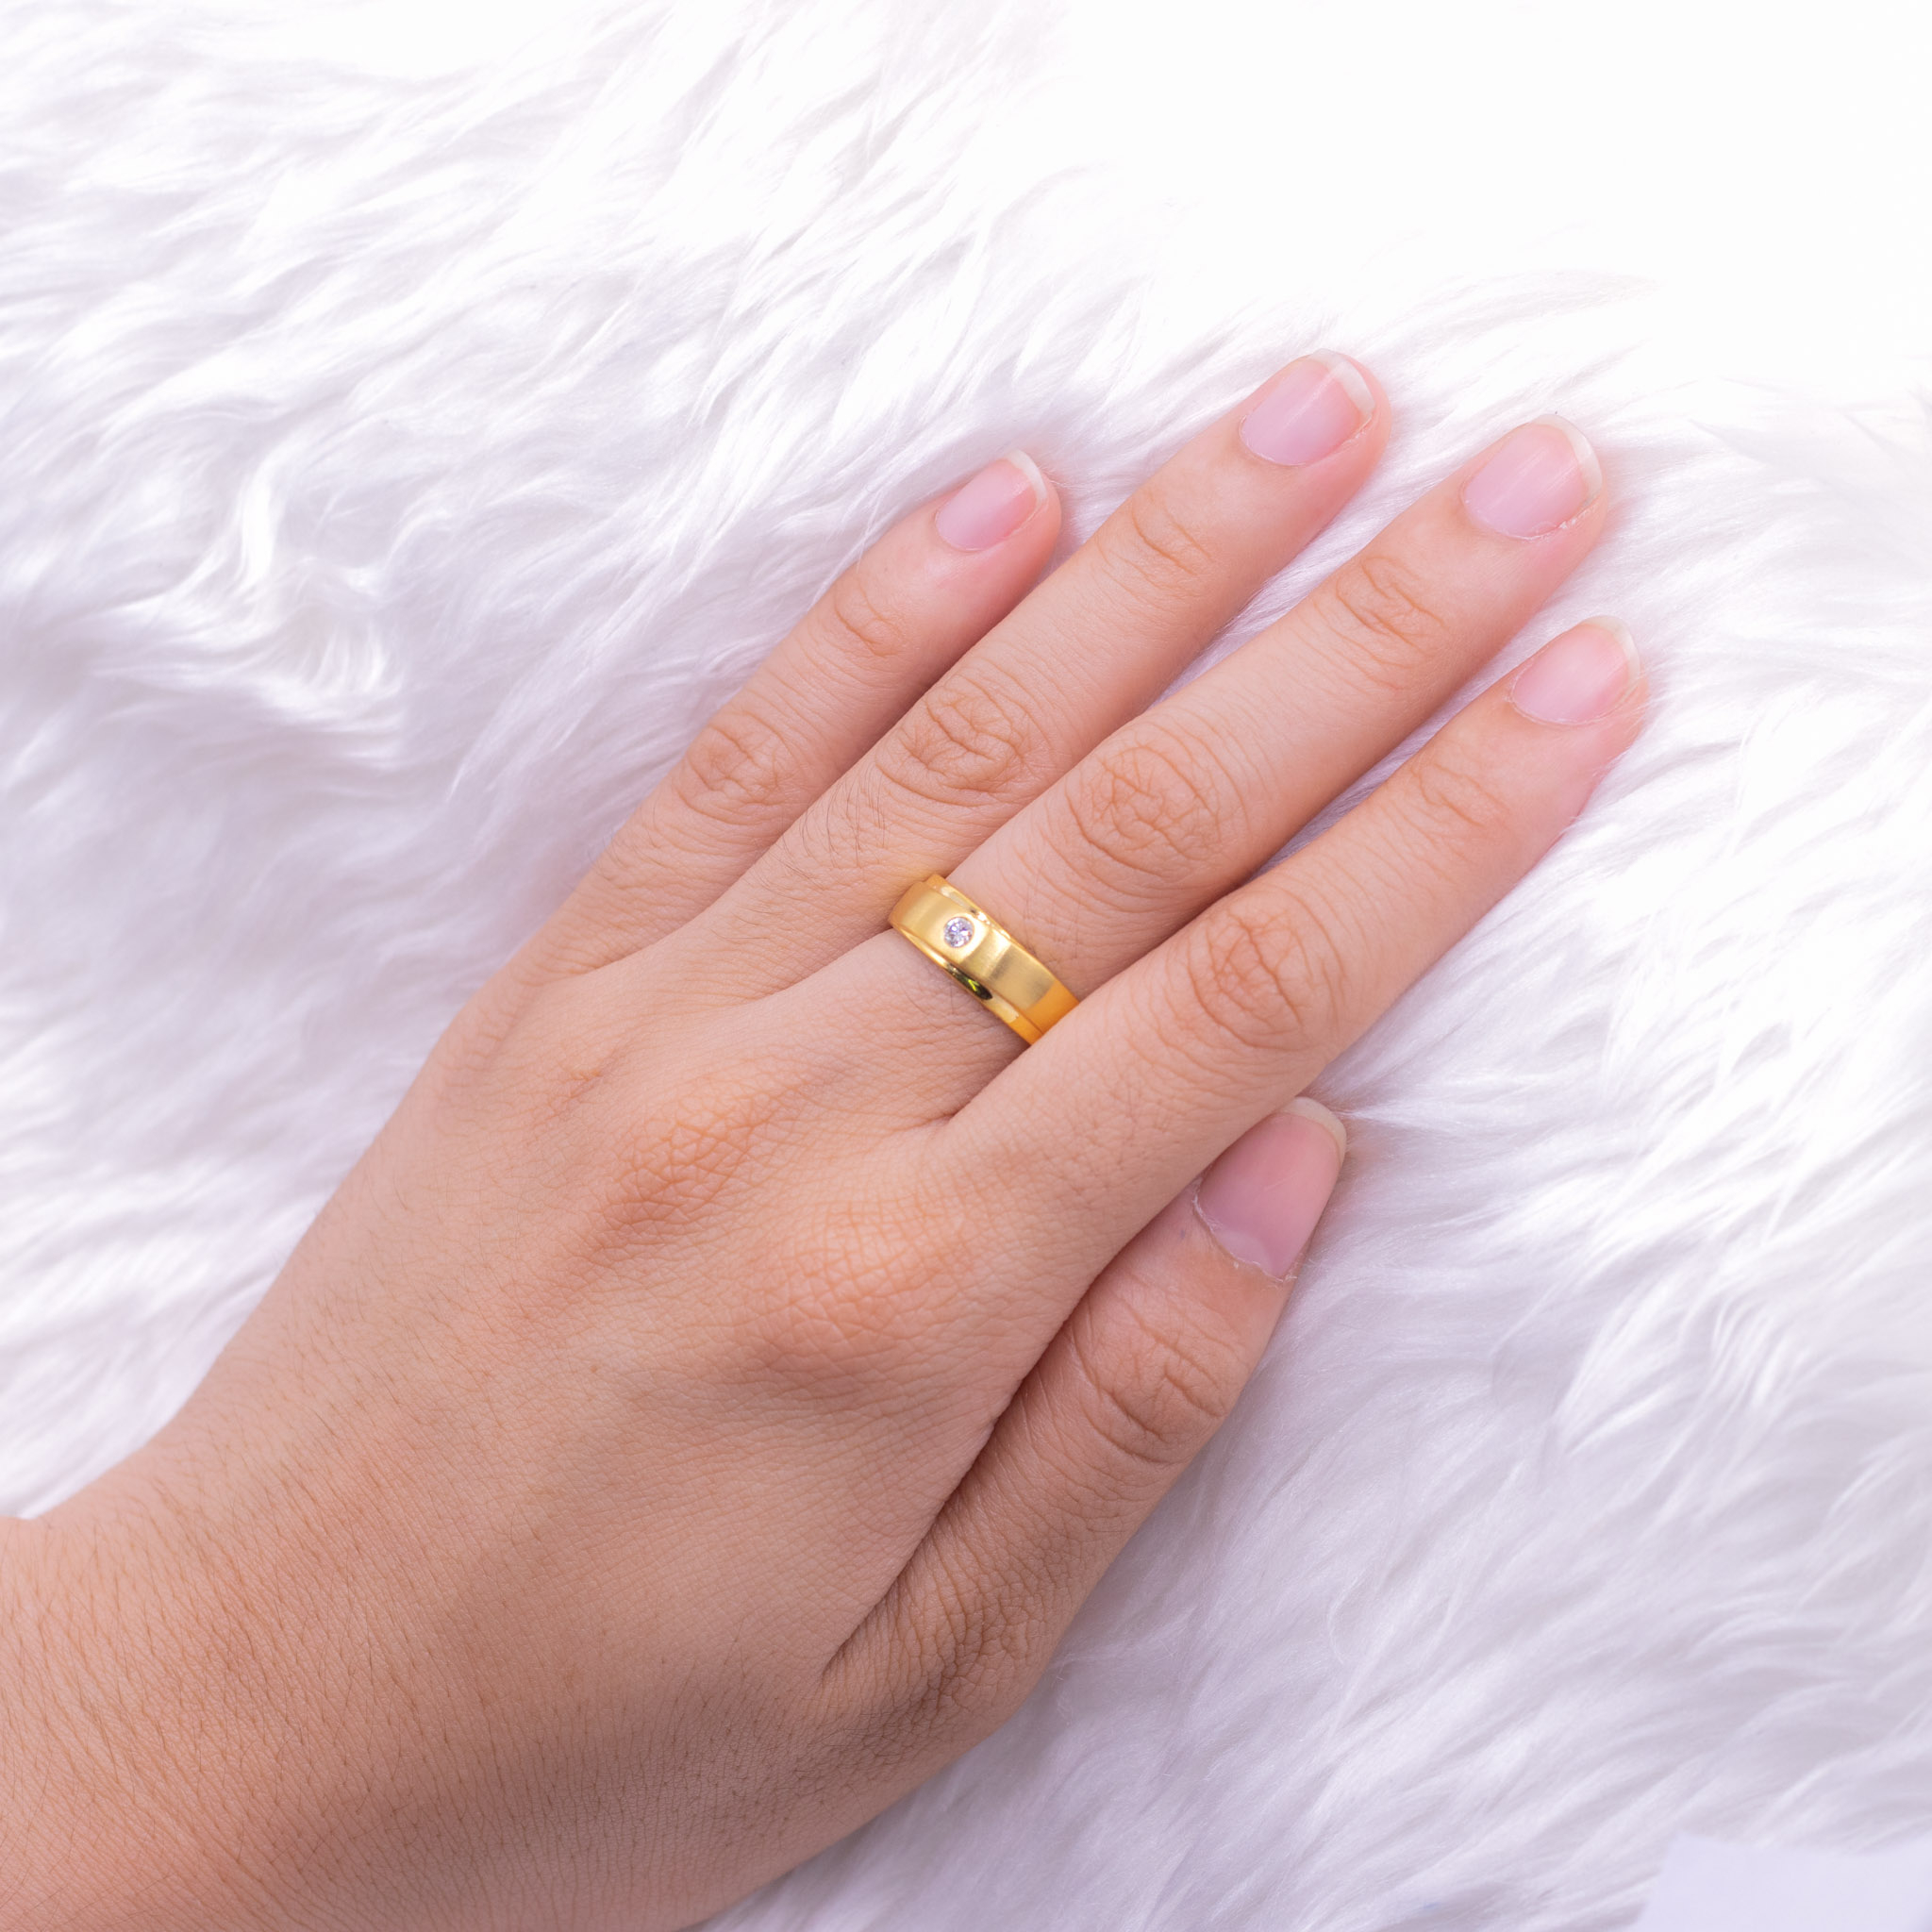 แหวนผู้ชายสวยๆ-แข็งแรง-ใส่ได้ทุกวัน-แหวนเพชร-แหวนทองเพชรแท้-ทองแท้-37-5-9k-me519